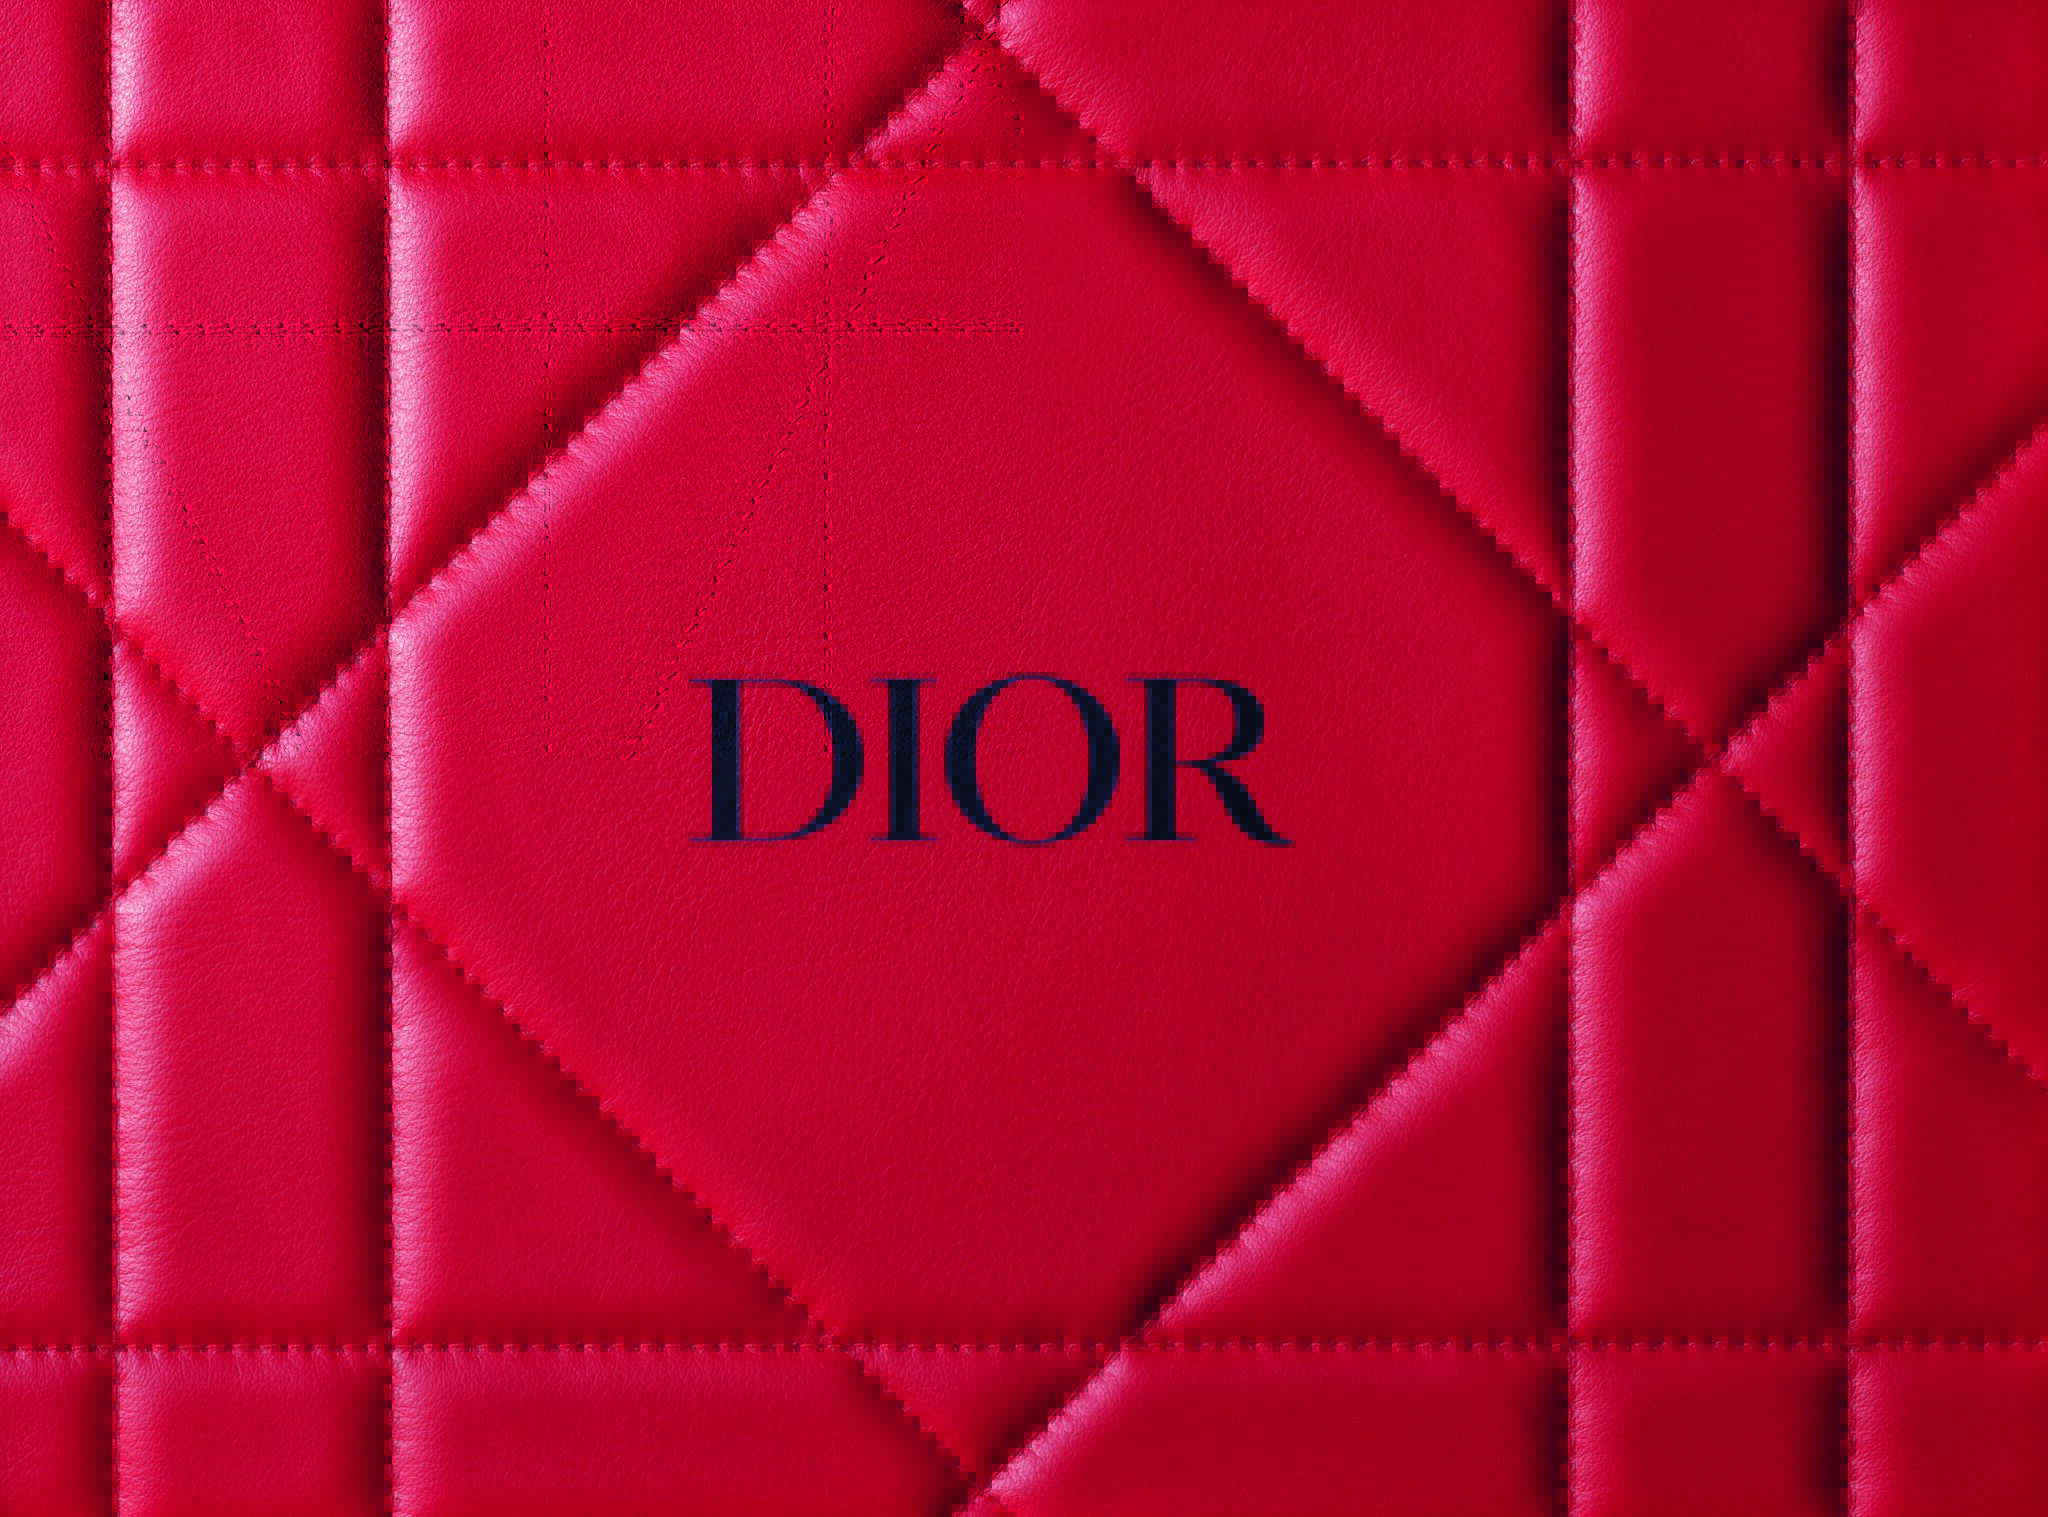 Sauvage  Официальный онлайнбутик Dior  Dior  официальный интернет магазин парфюмерии и косметики Диор в России